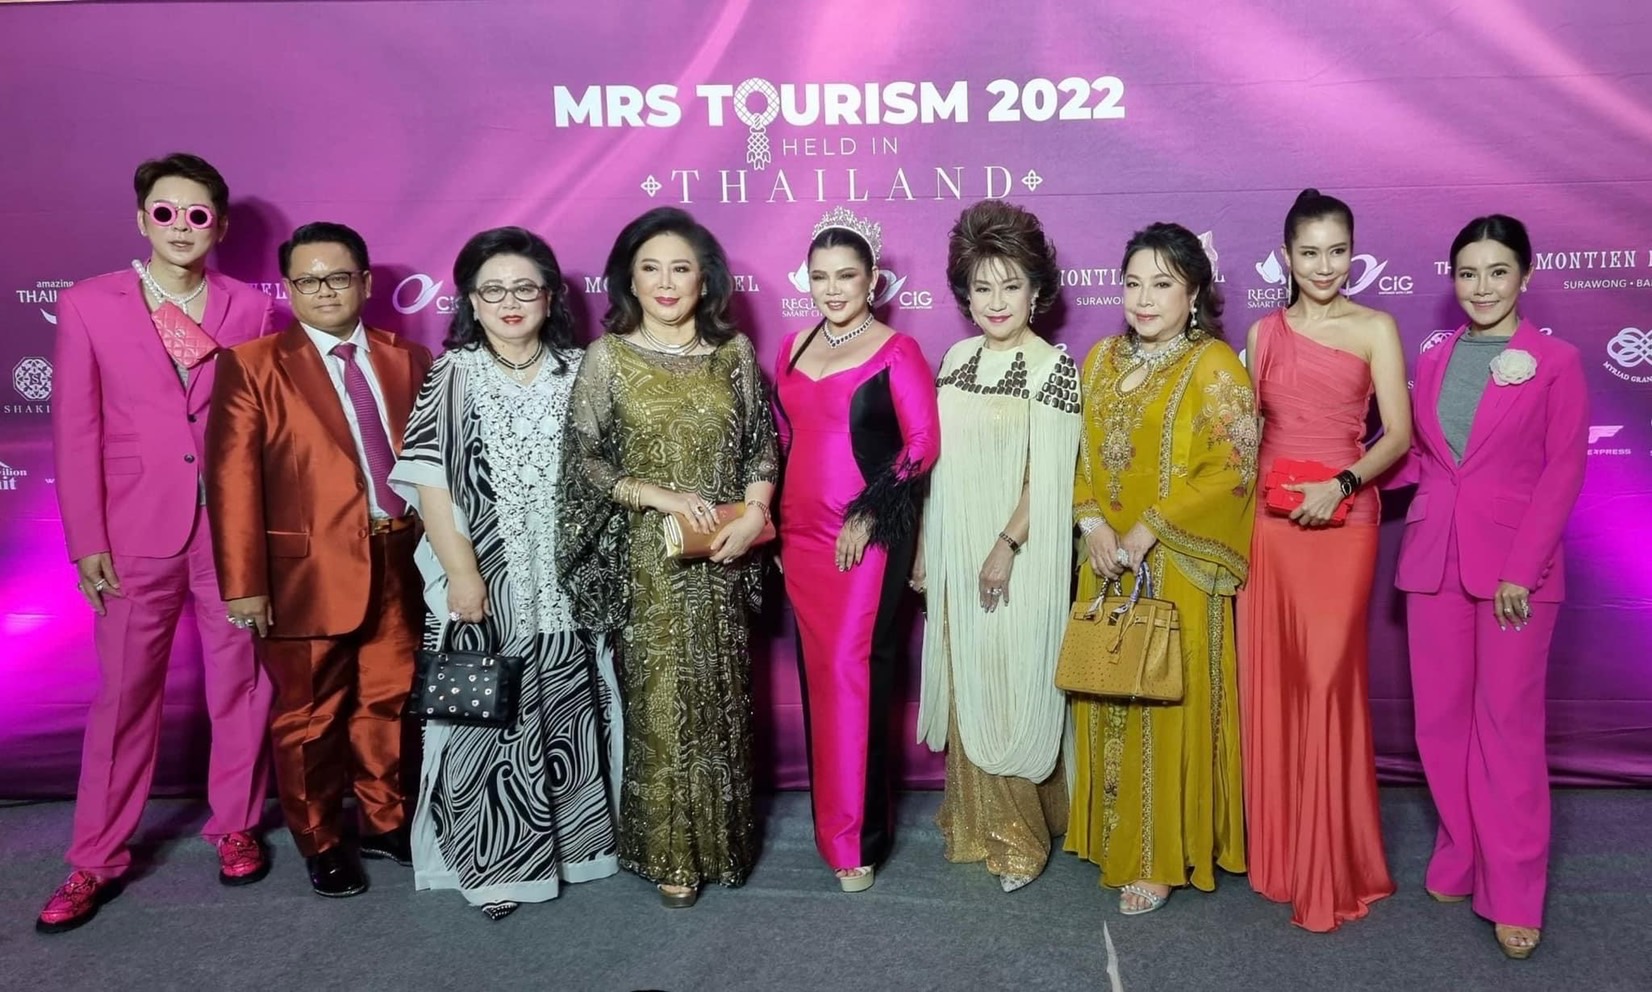 ไทยเจ้าภาพ “Mrs. Tourism 2022” เฟ้นหาสาวทรงเสน่ห์ ต้อนรับไฮซีซั่นแห่งการท่องเที่ยว “หมอกี้ อังคนางค์” ตัวแทนสาวไทยประชันพลังสาวงามกว่า 40 คนจากทั่วโลก